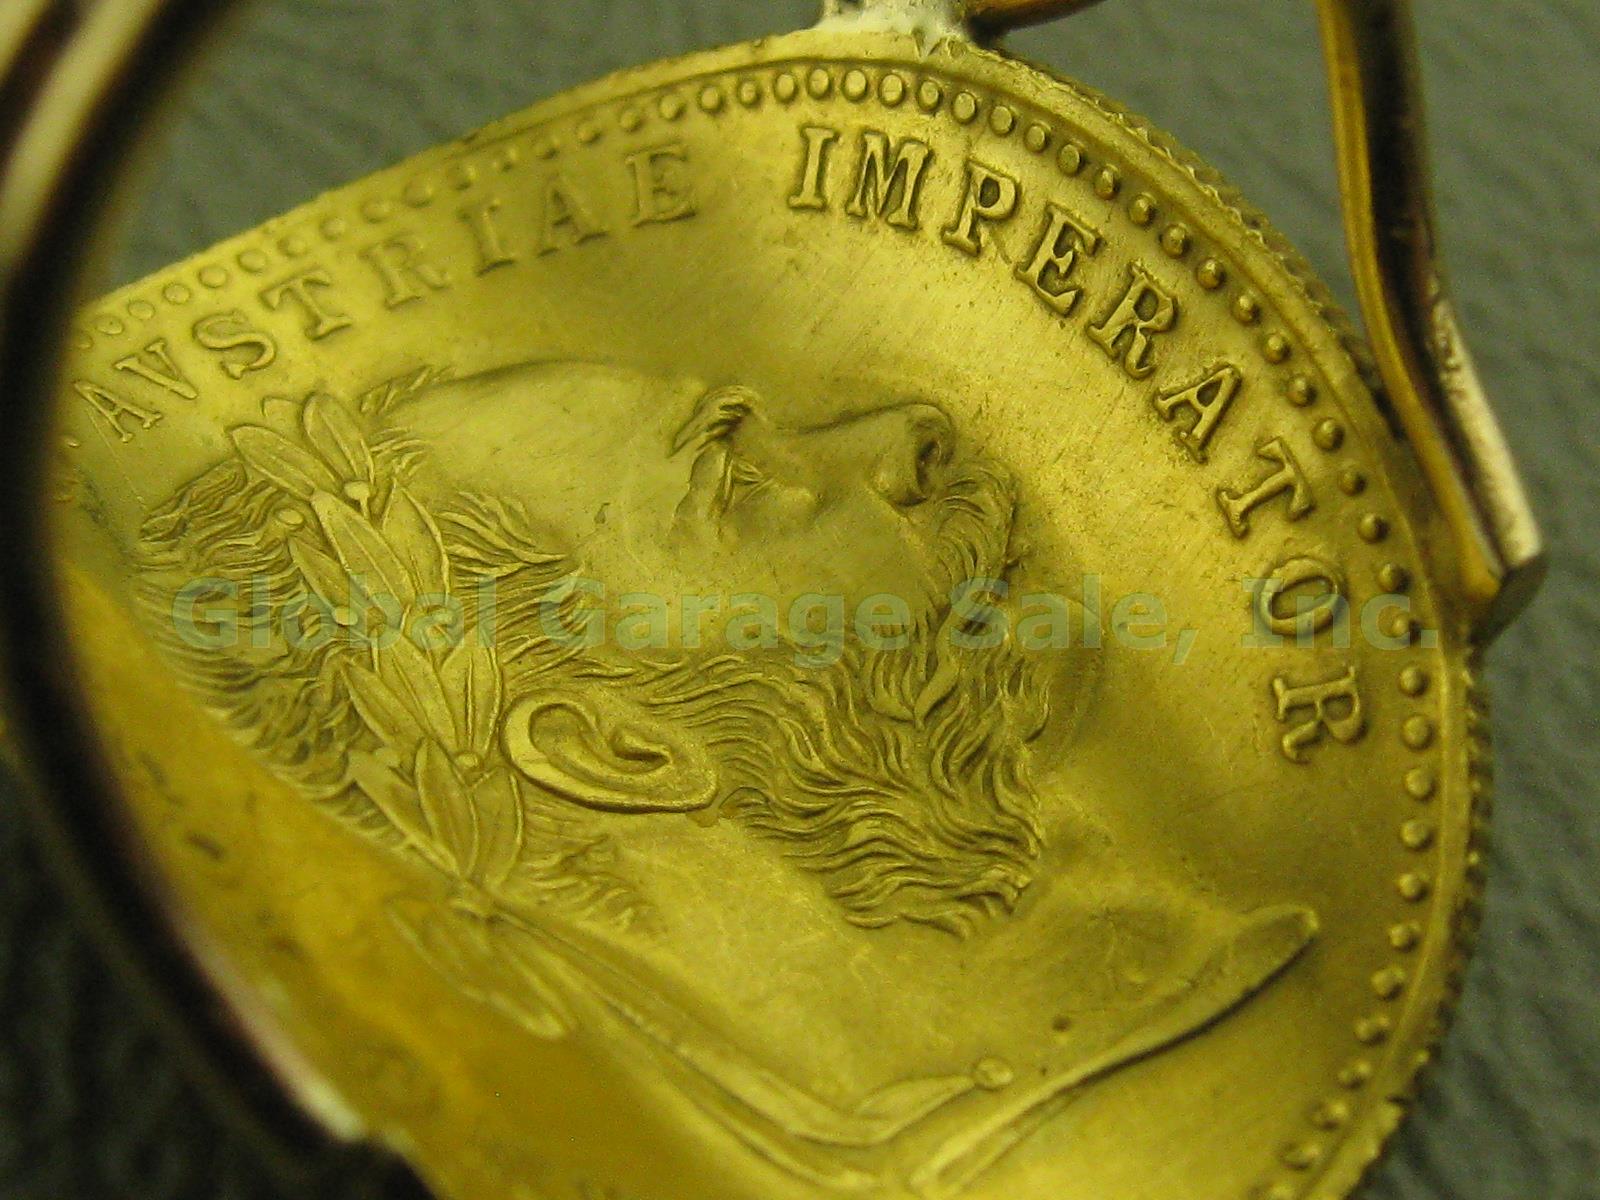 1915 Austria Avstriae Imperator IOS IDG Franc Ducat Gold Coin Ring 4.3g Sz 4.75 3